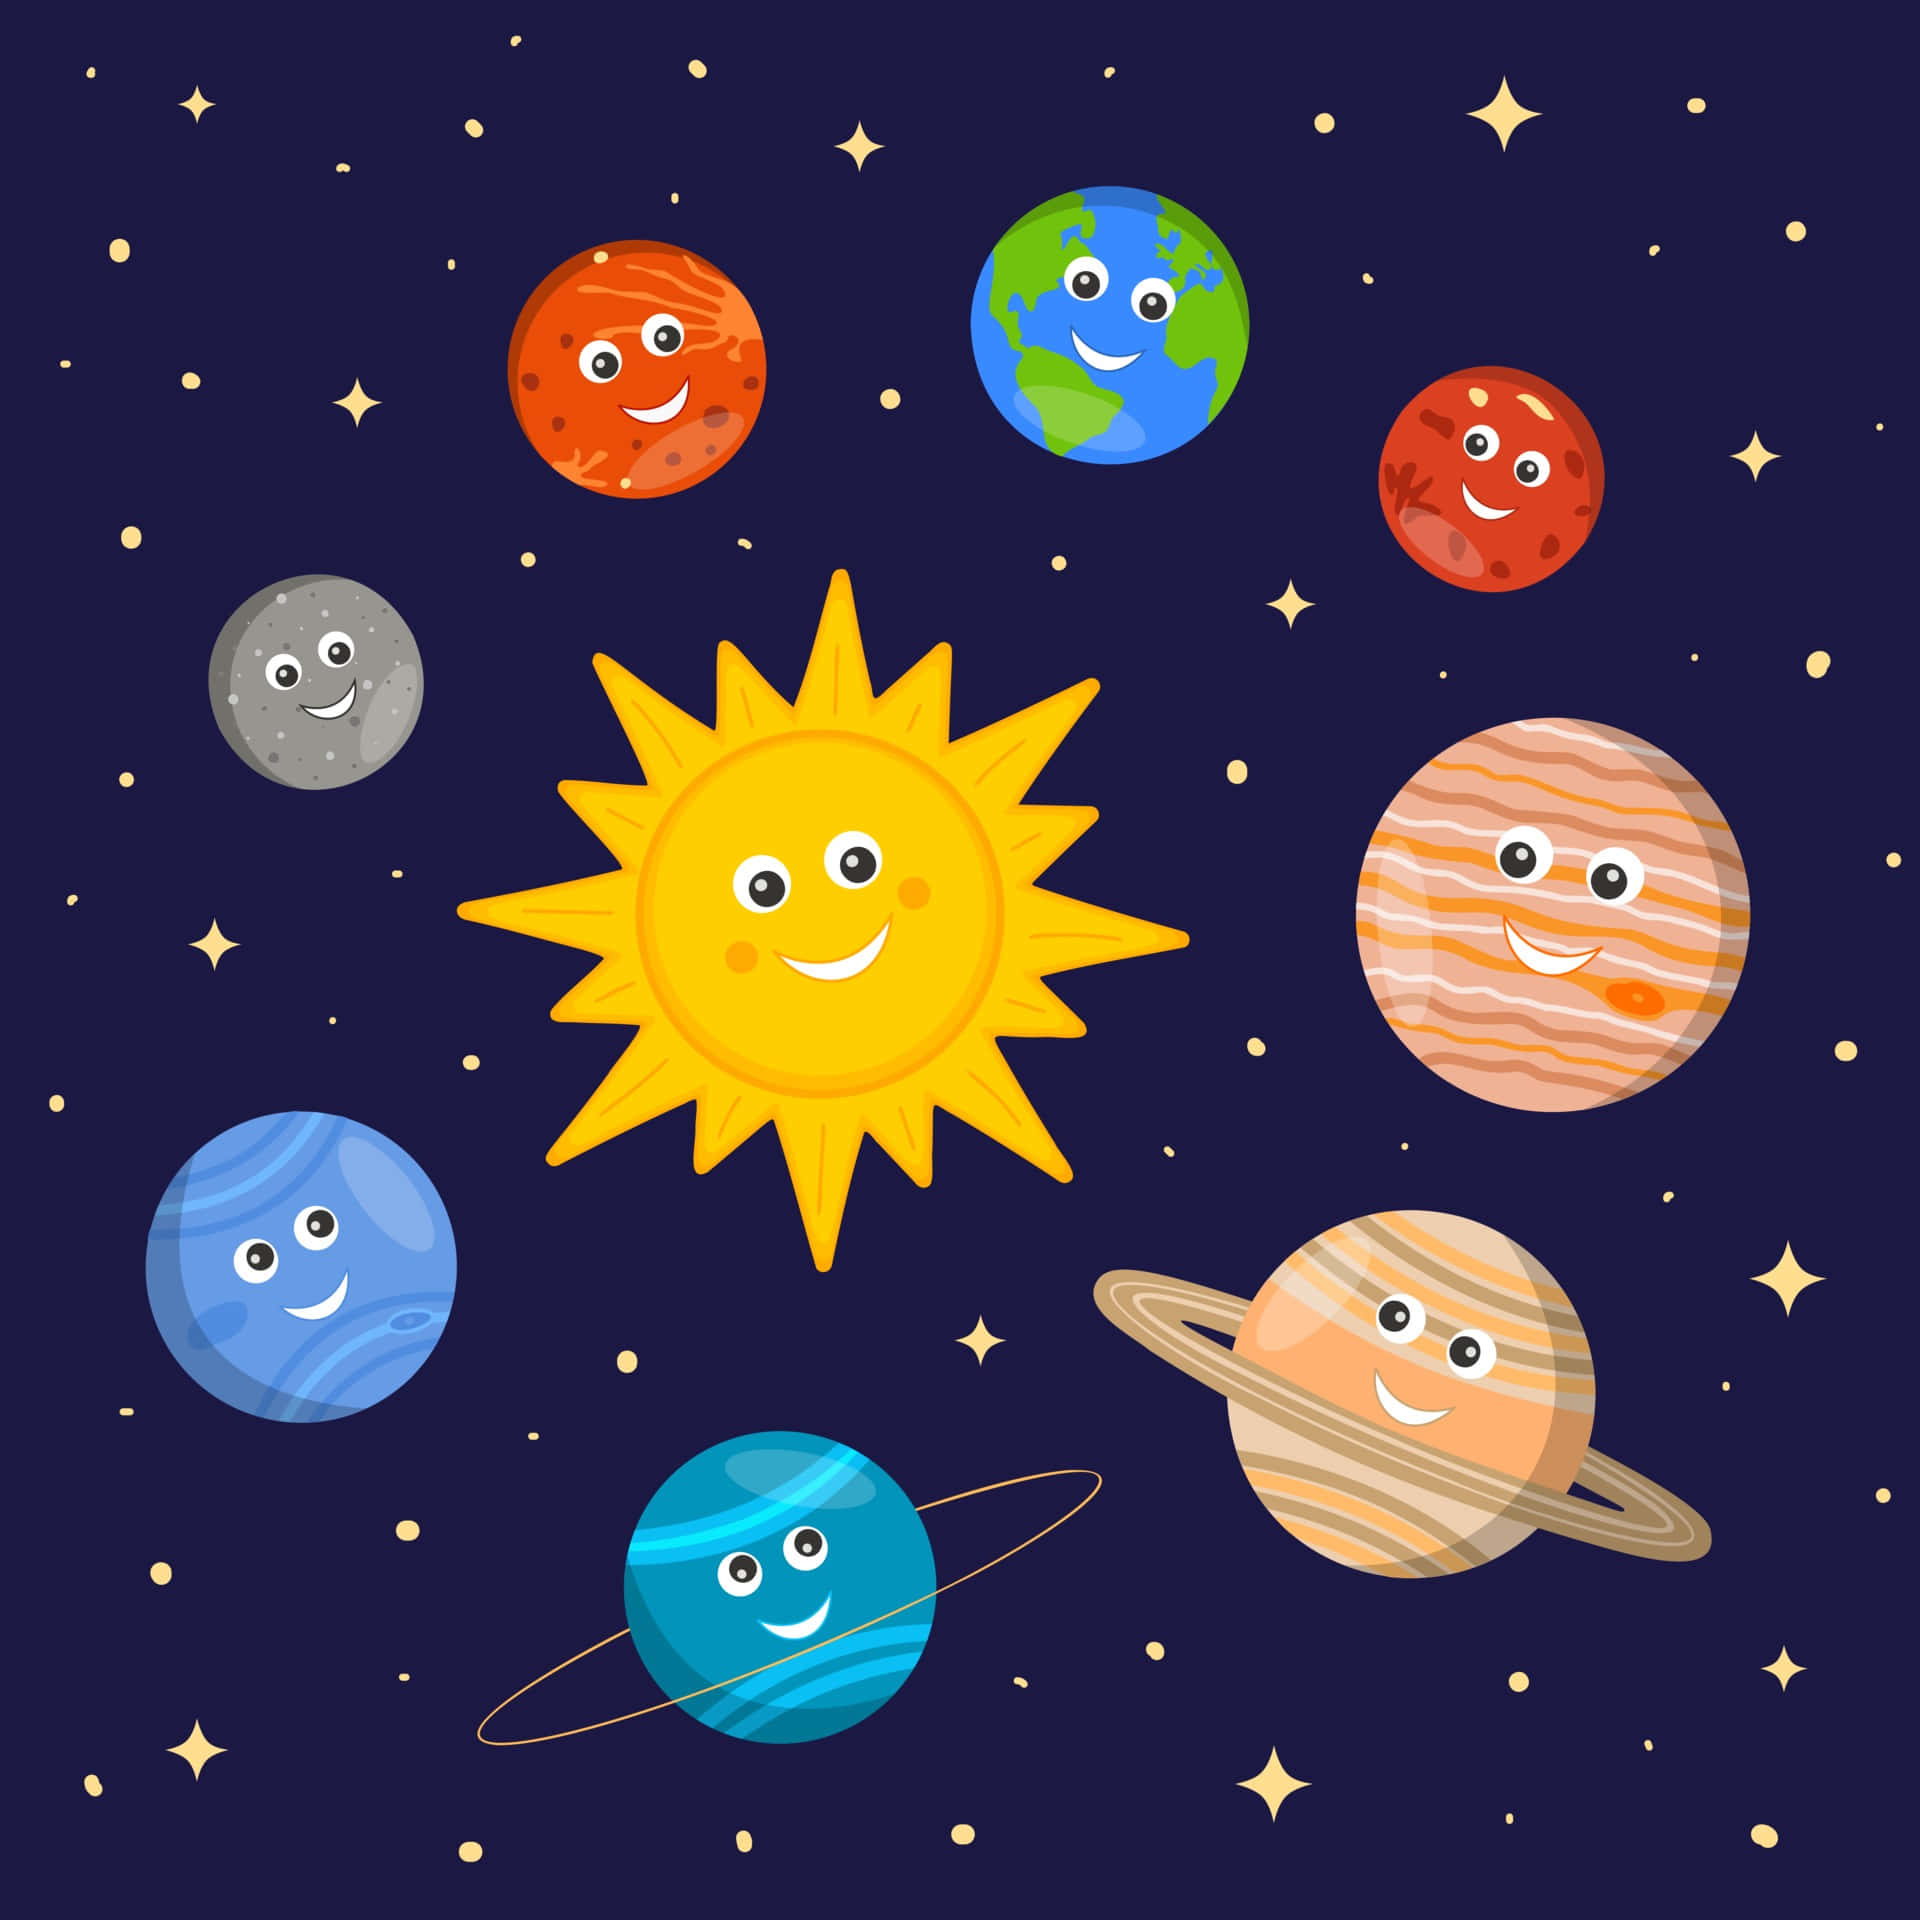 Dibujosanimados De Planetas Y El Sol En Una Imagen Del Sistema Solar.